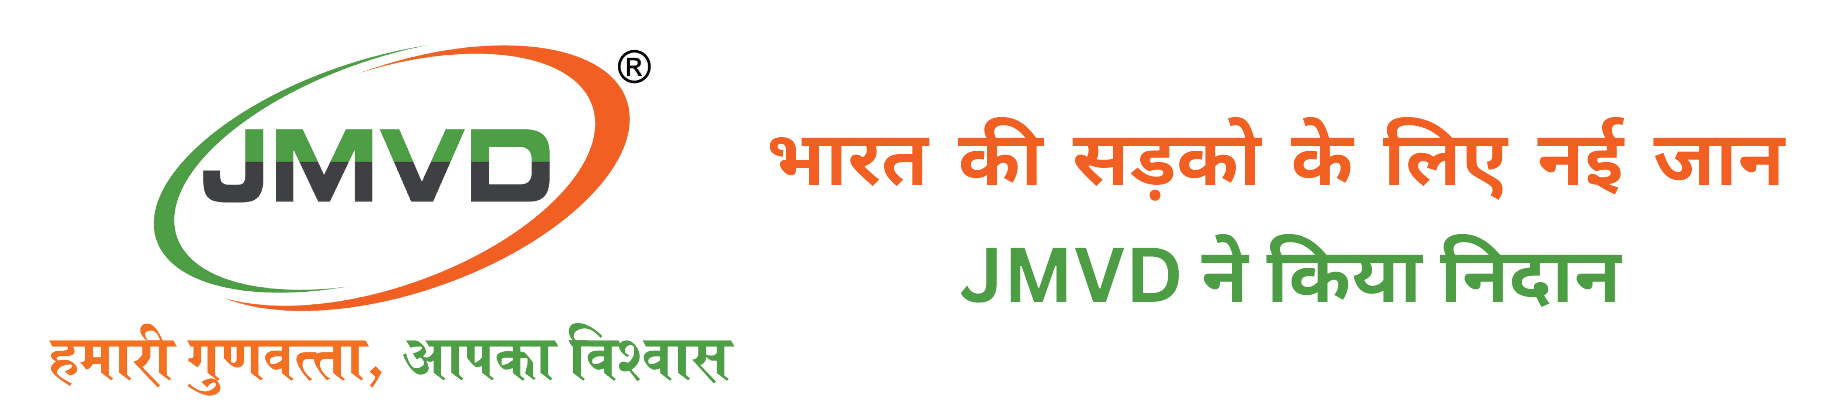 JMVD INDUSTRIES PVT. LTD